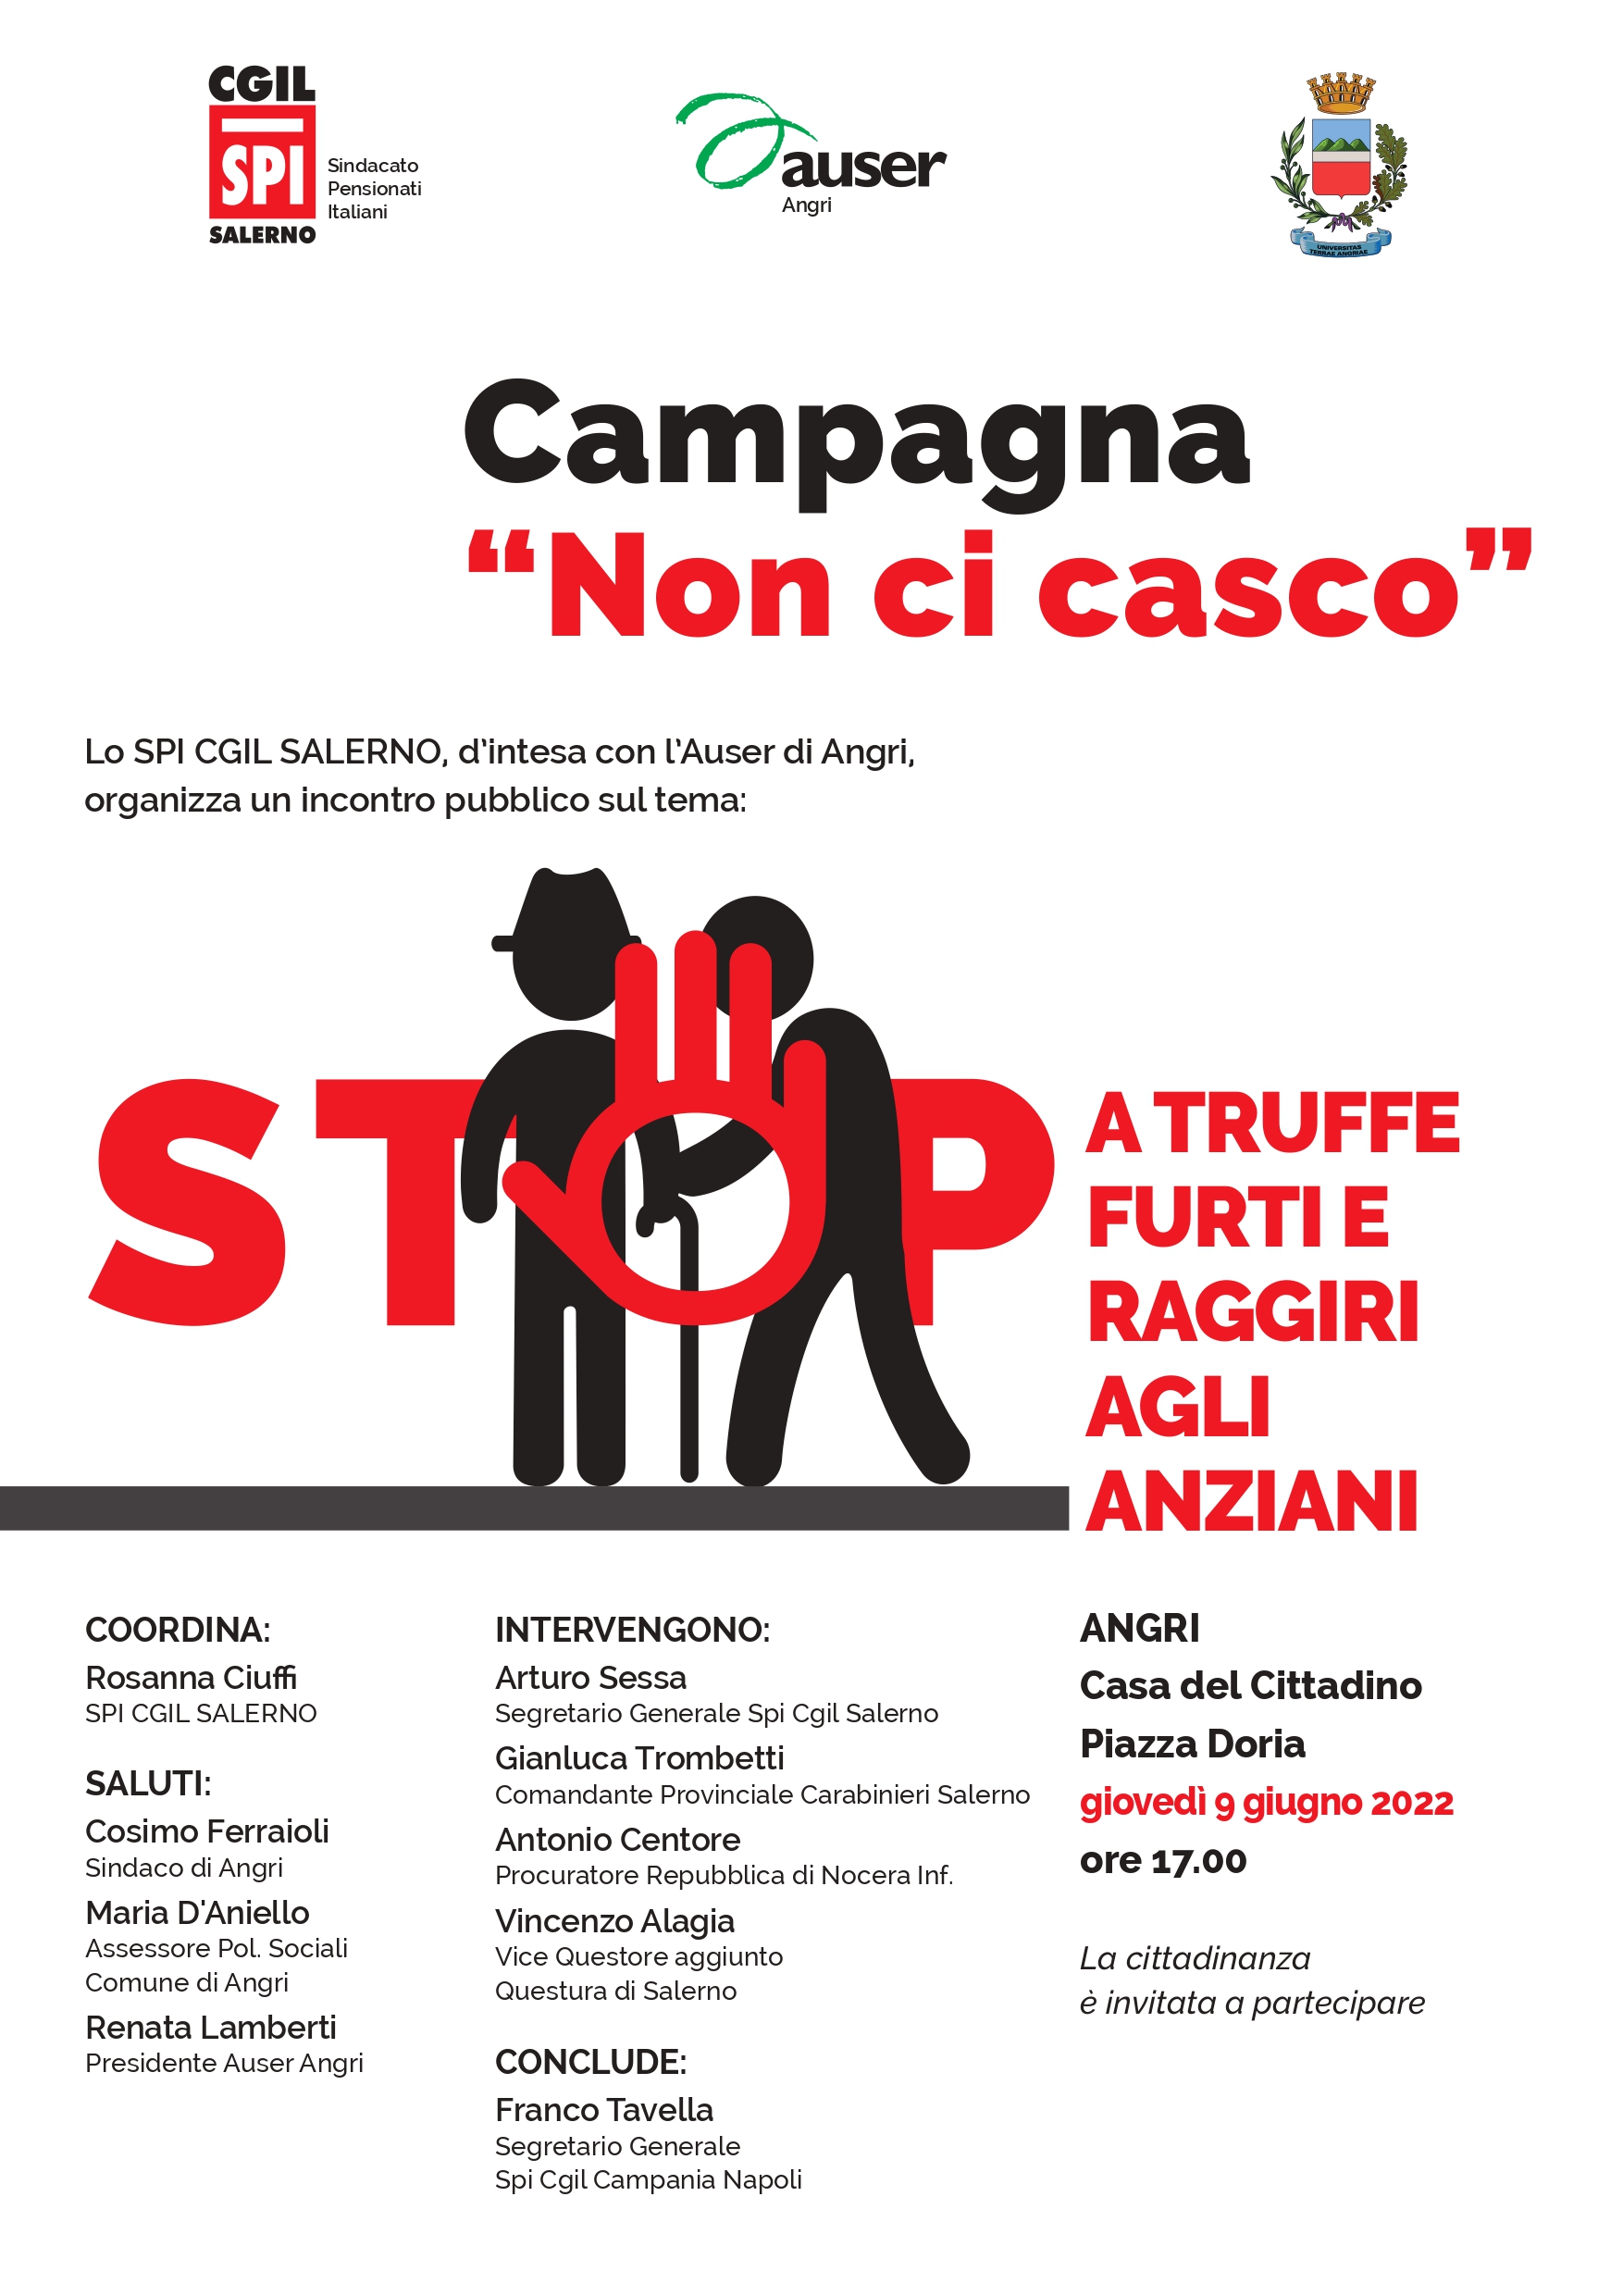 Salerno: Cgil “Stop a truffe furti e raggiri ad anziani”, campagna “Non ci casco”